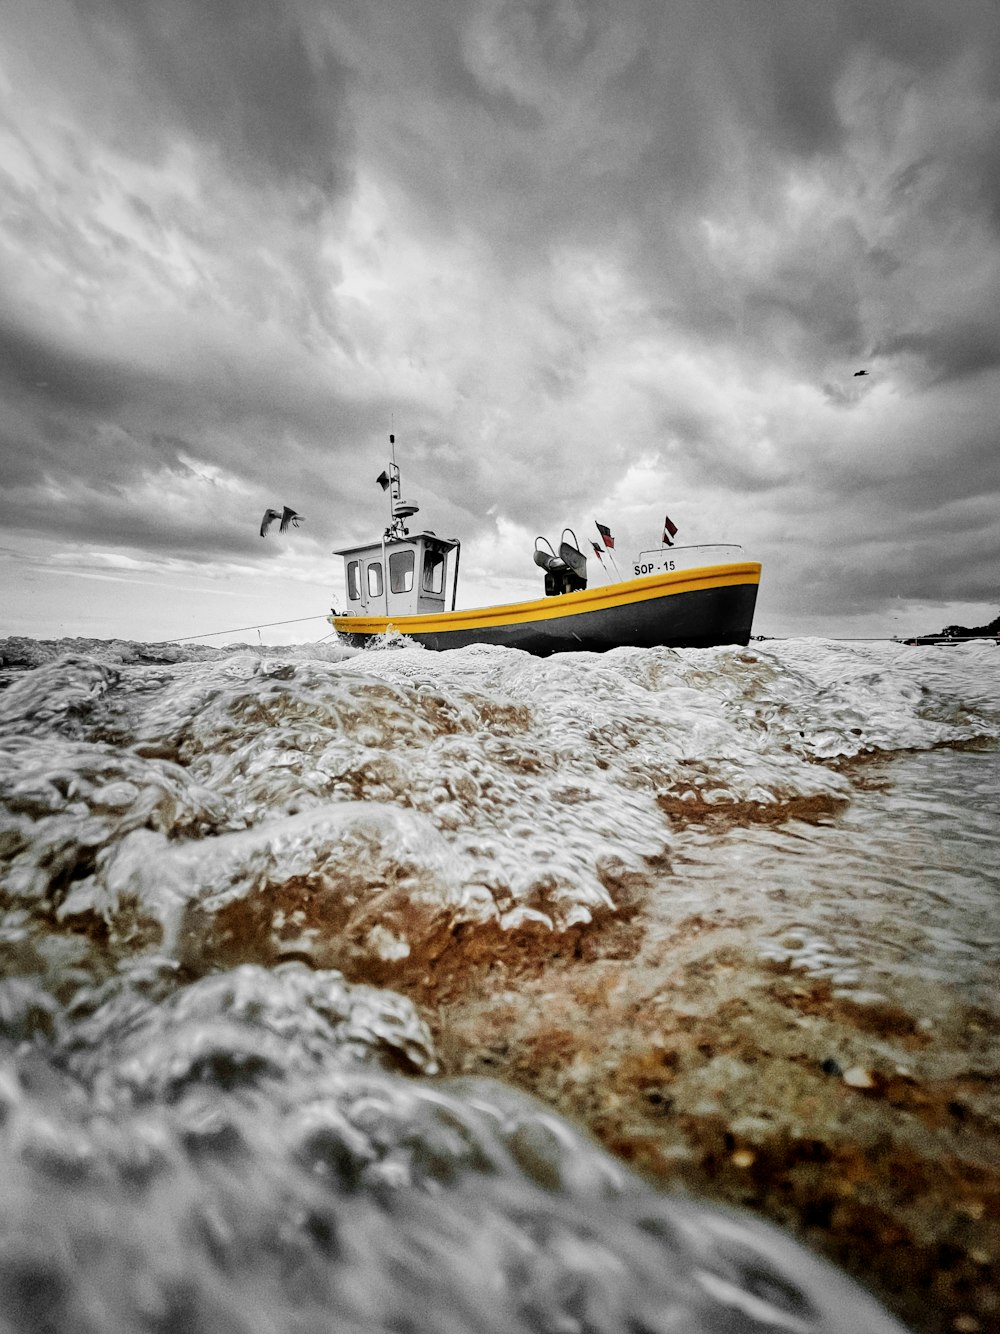 曇り空の下、海岸に浮かぶ黄色と白のボート